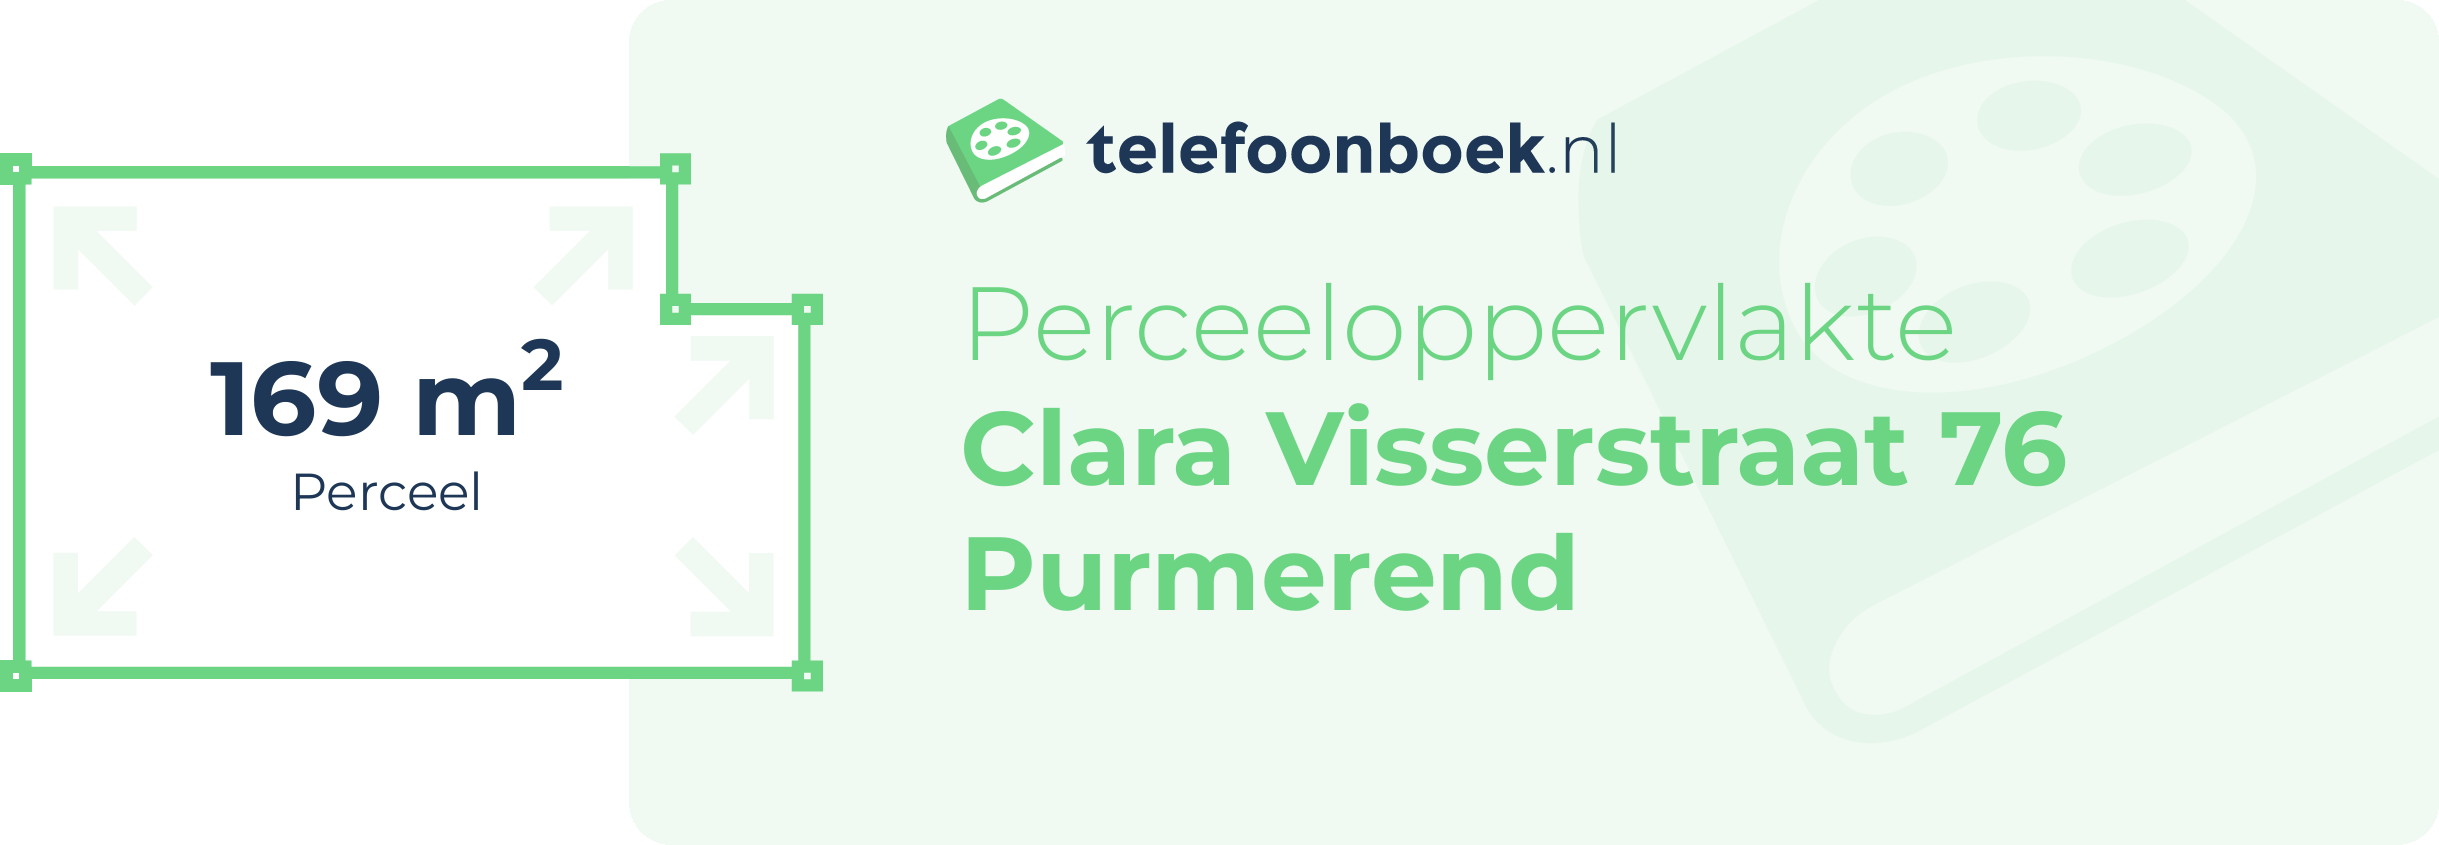 Perceeloppervlakte Clara Visserstraat 76 Purmerend